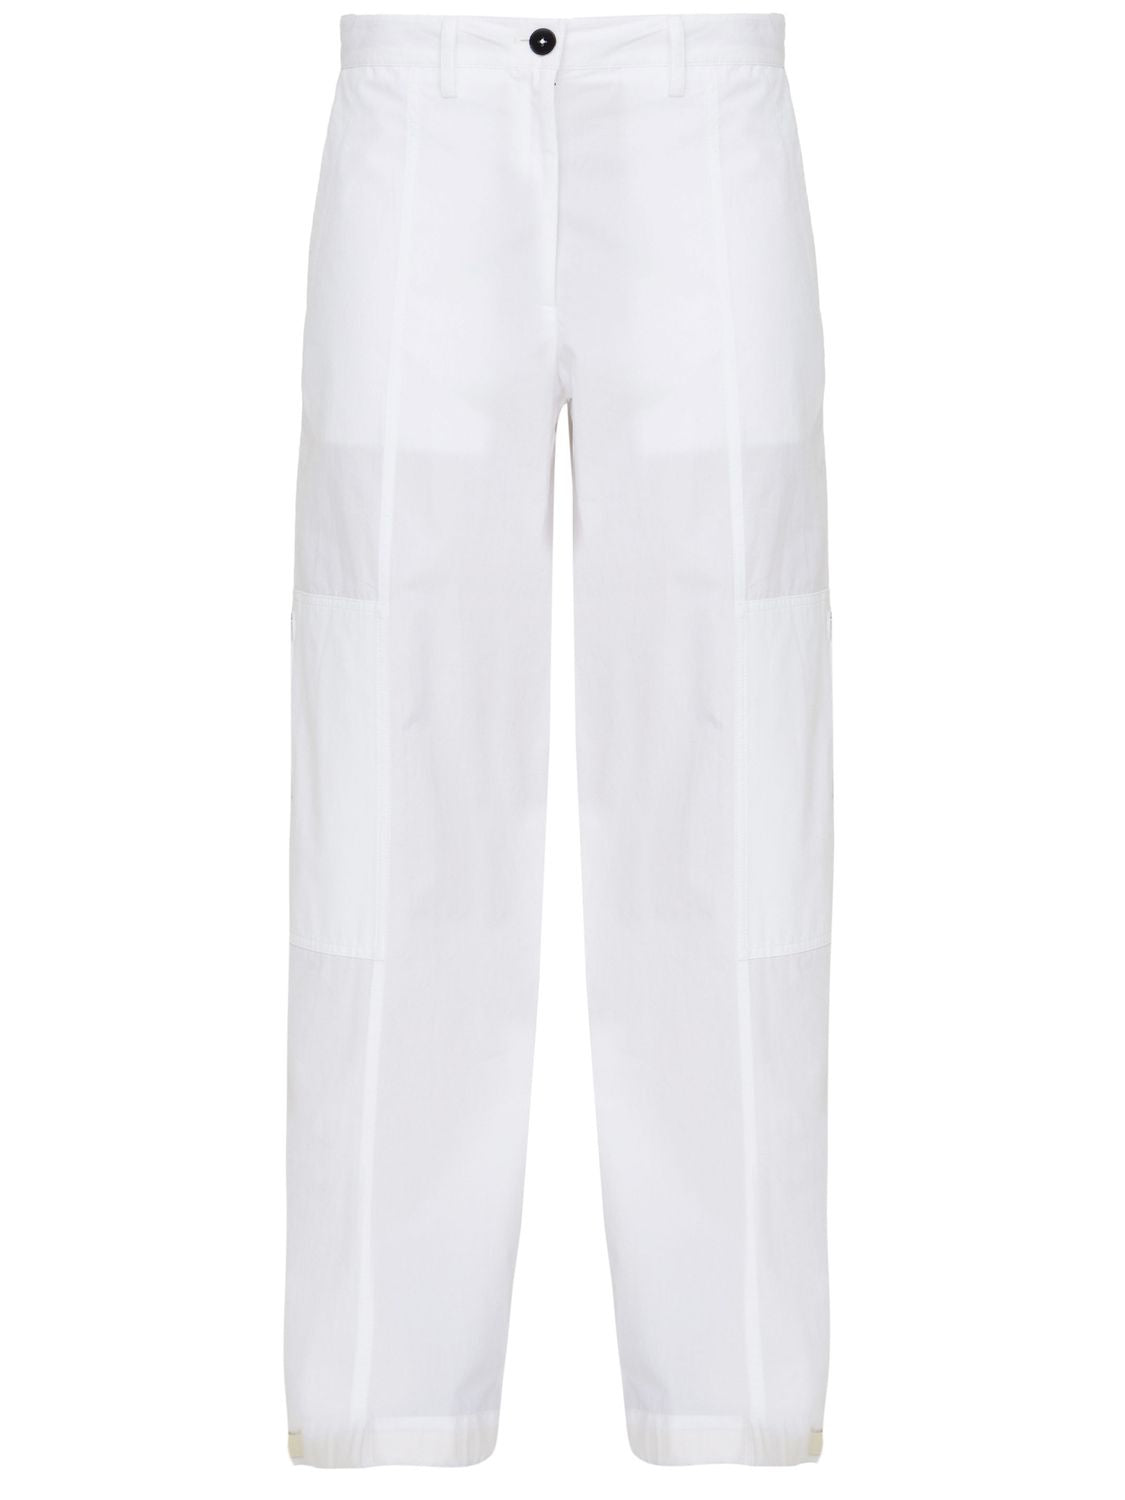 白色棉质阔腿货运裤-SS23系列